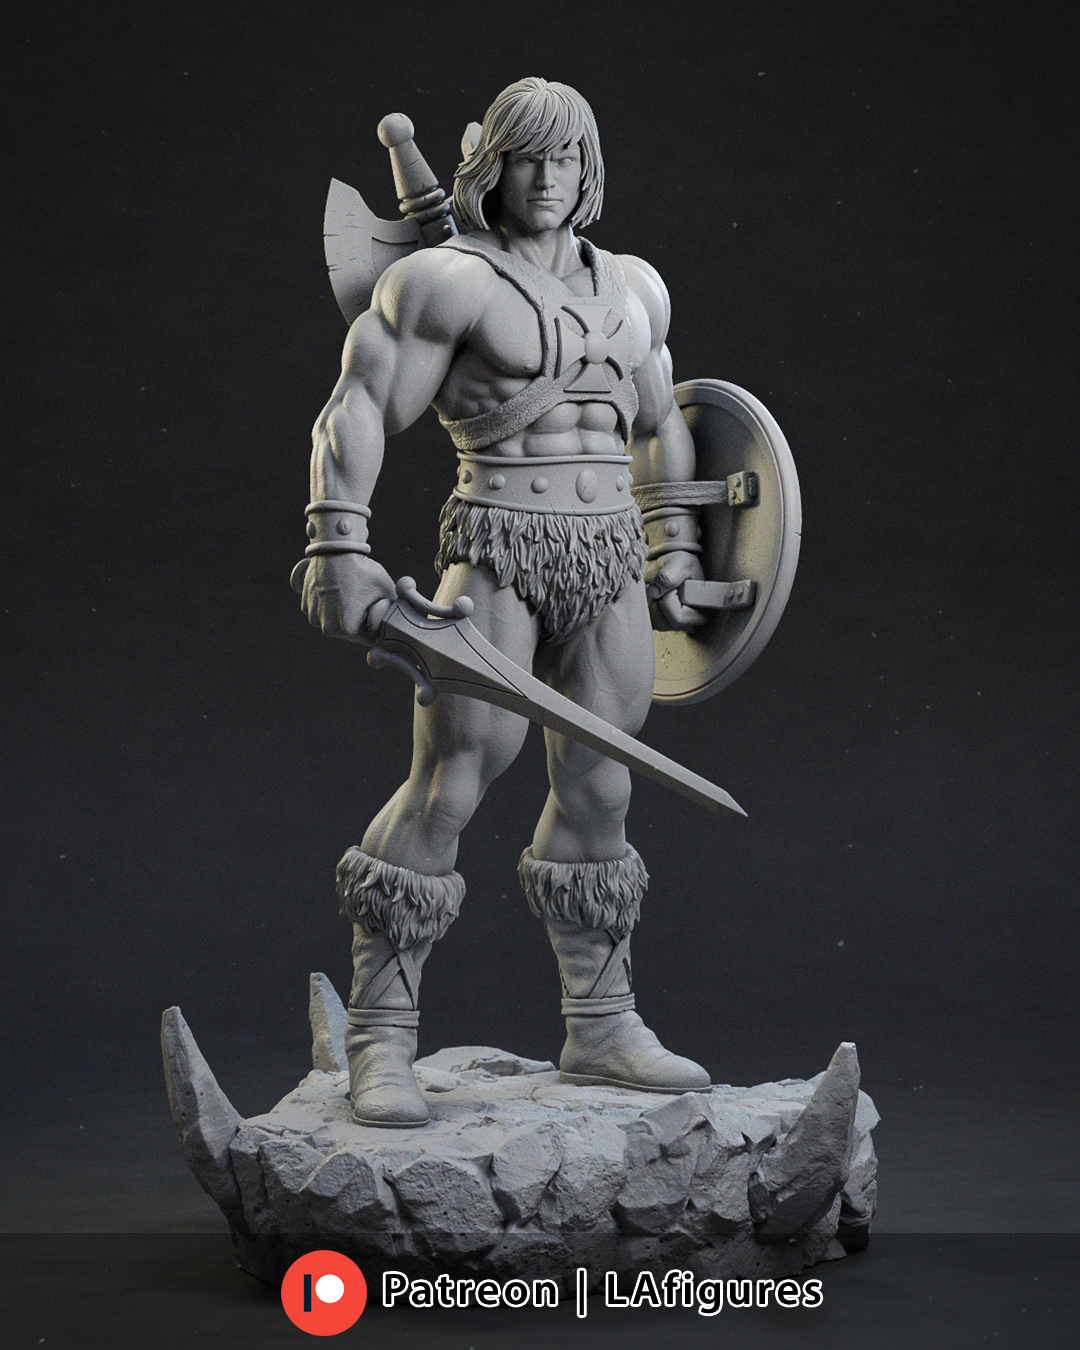 He-Man Statue (Fan Art) 10 or 12 scale 220mm - 3D Print